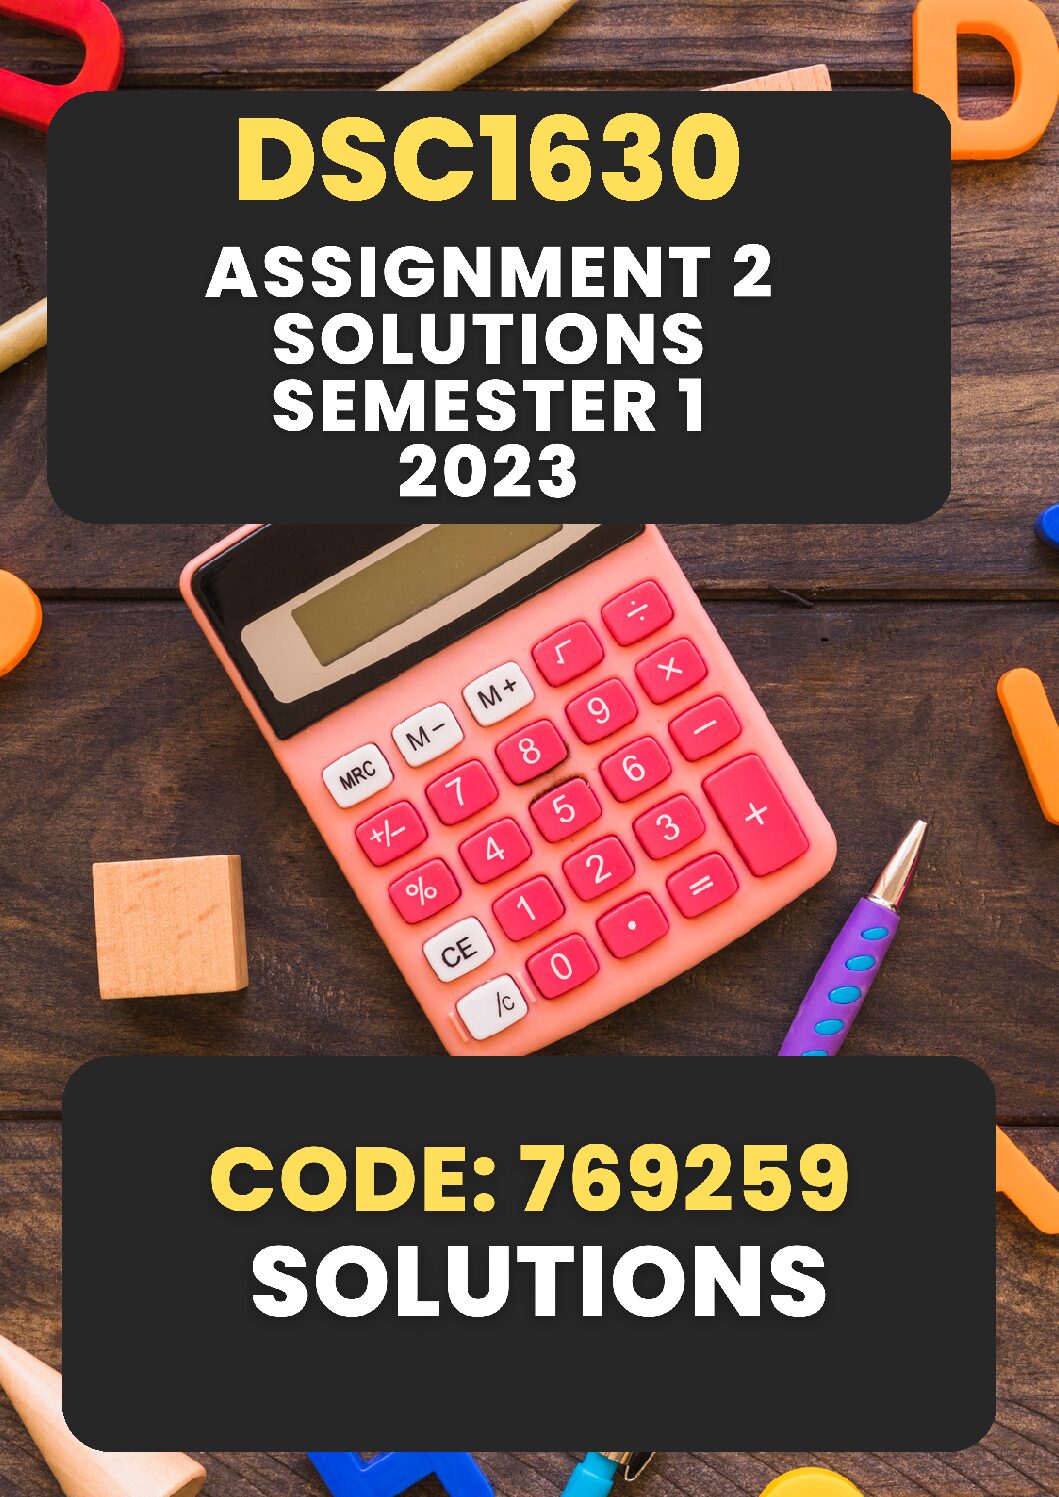 fac1601 assignment 5 semester 2 2022